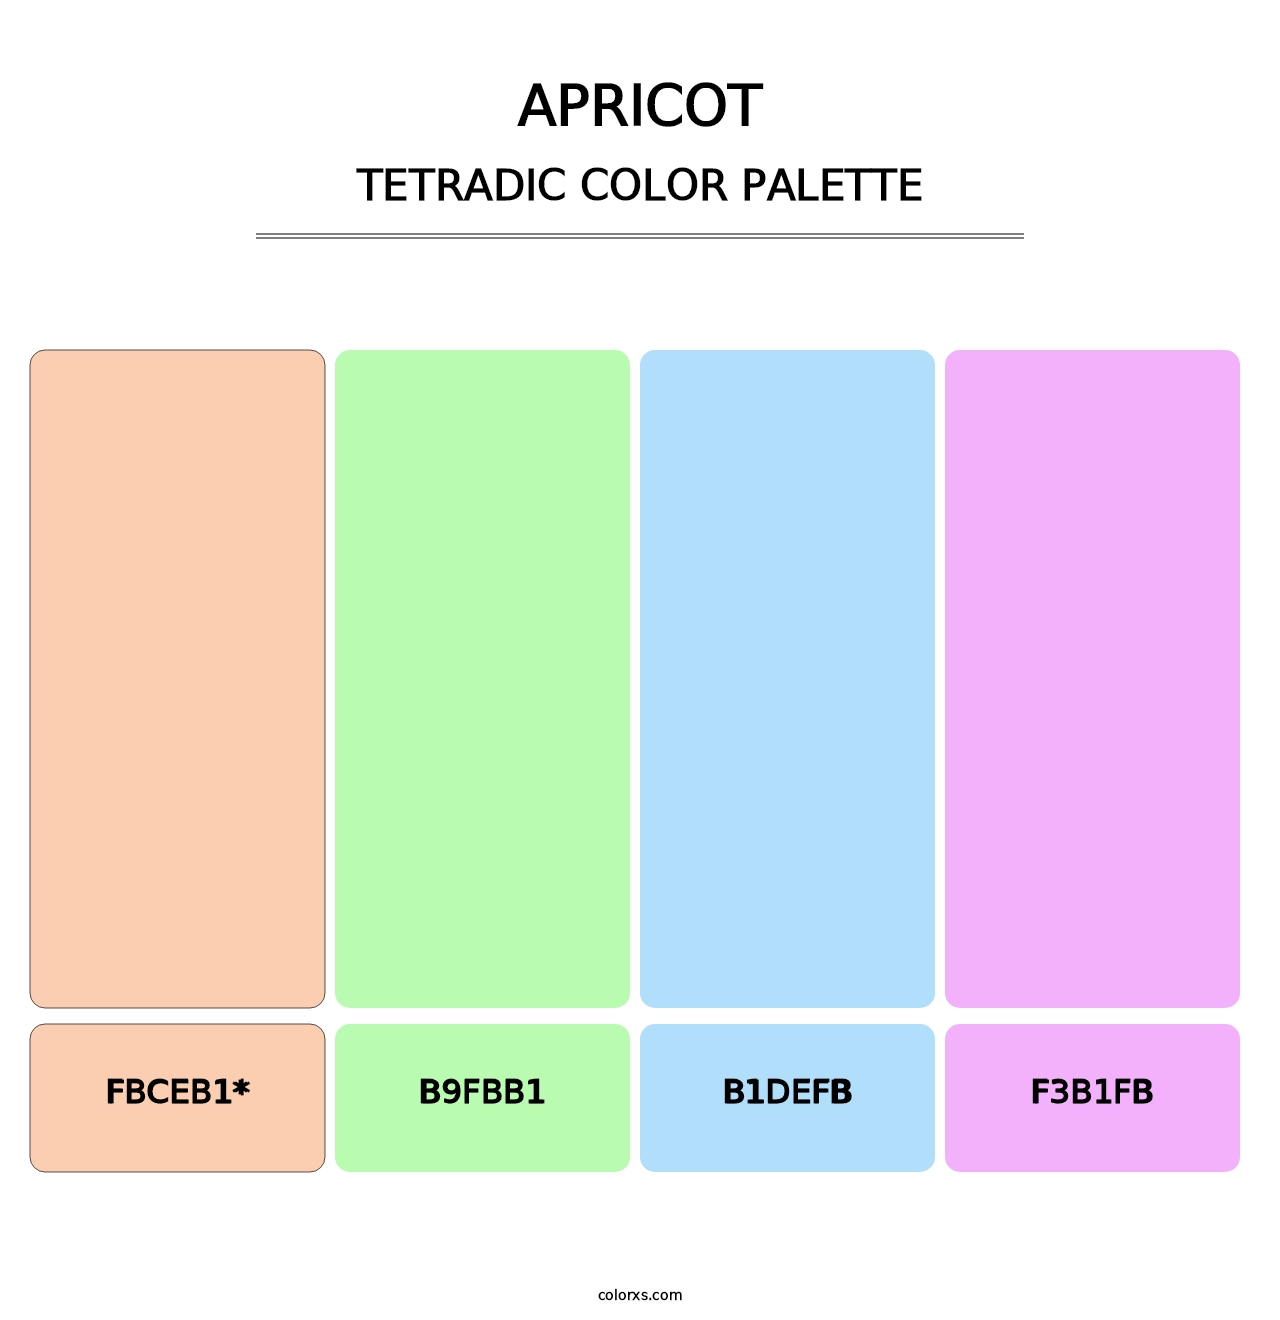 Apricot - Tetradic Color Palette